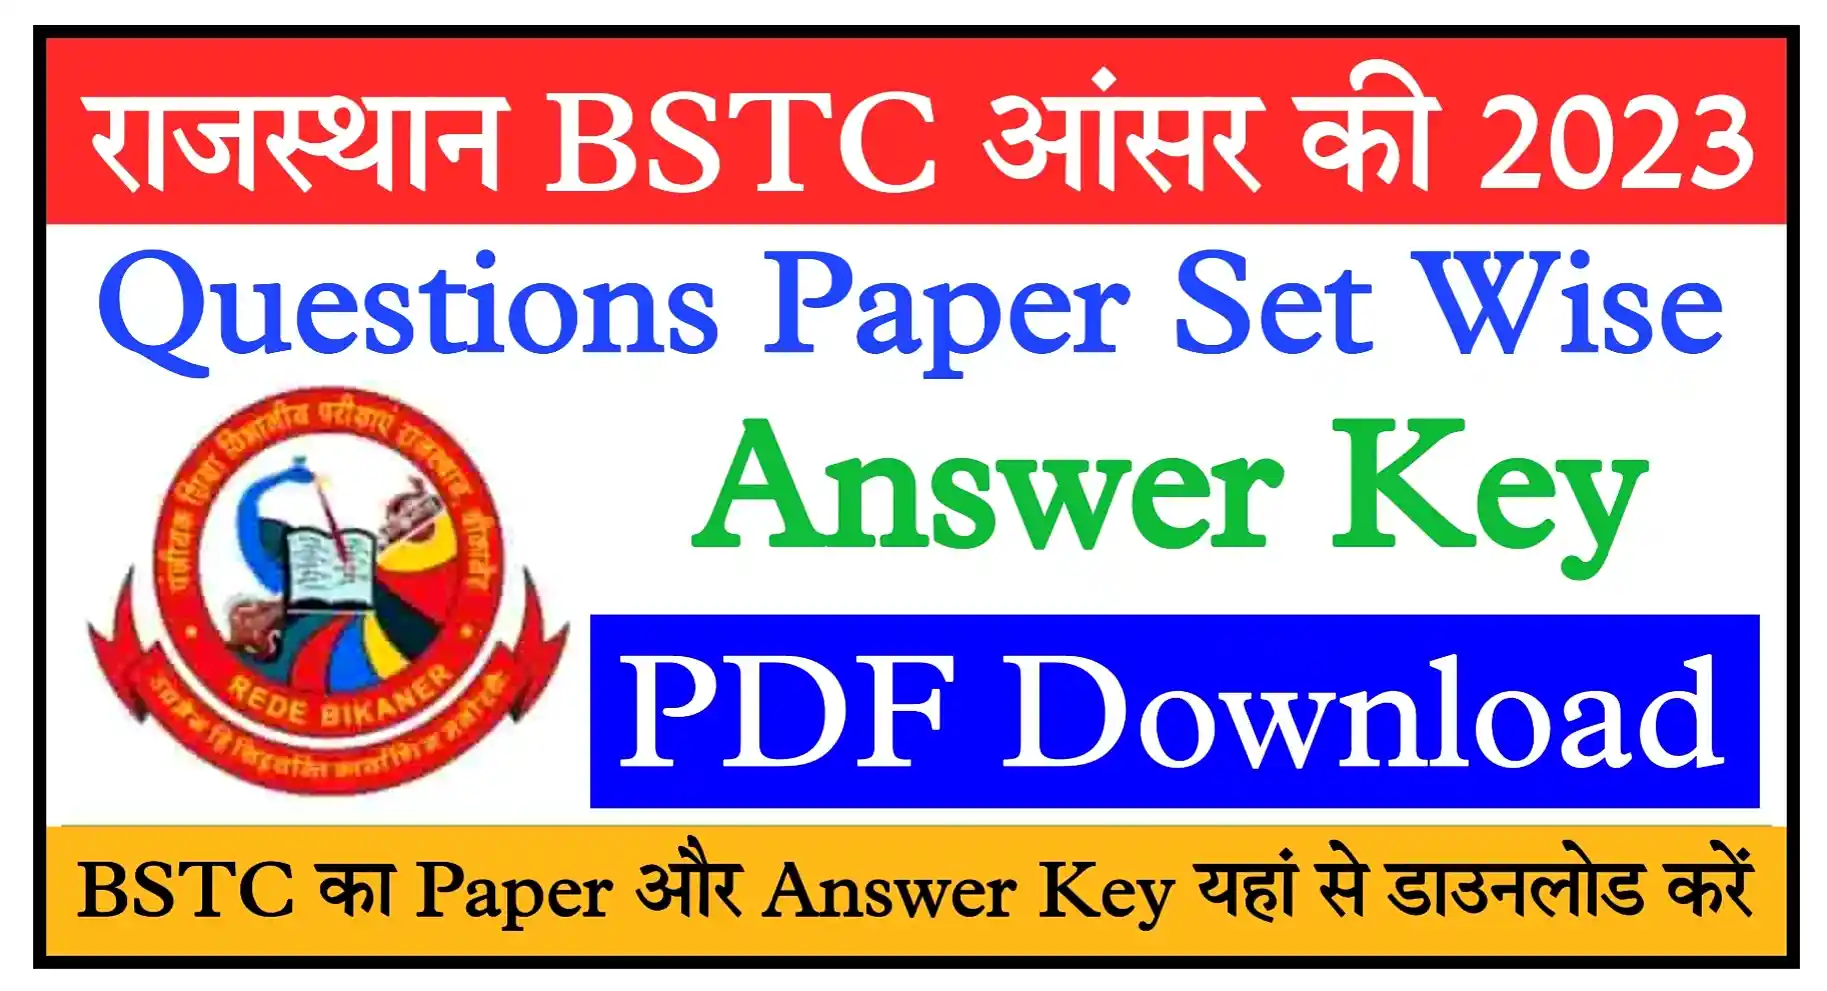 Rajasthan BSTC Answer Key 2023 PDF Download राजस्थान बीएसटीसी पेपर और आंसर की PDF यहां से डाउनलोड करें